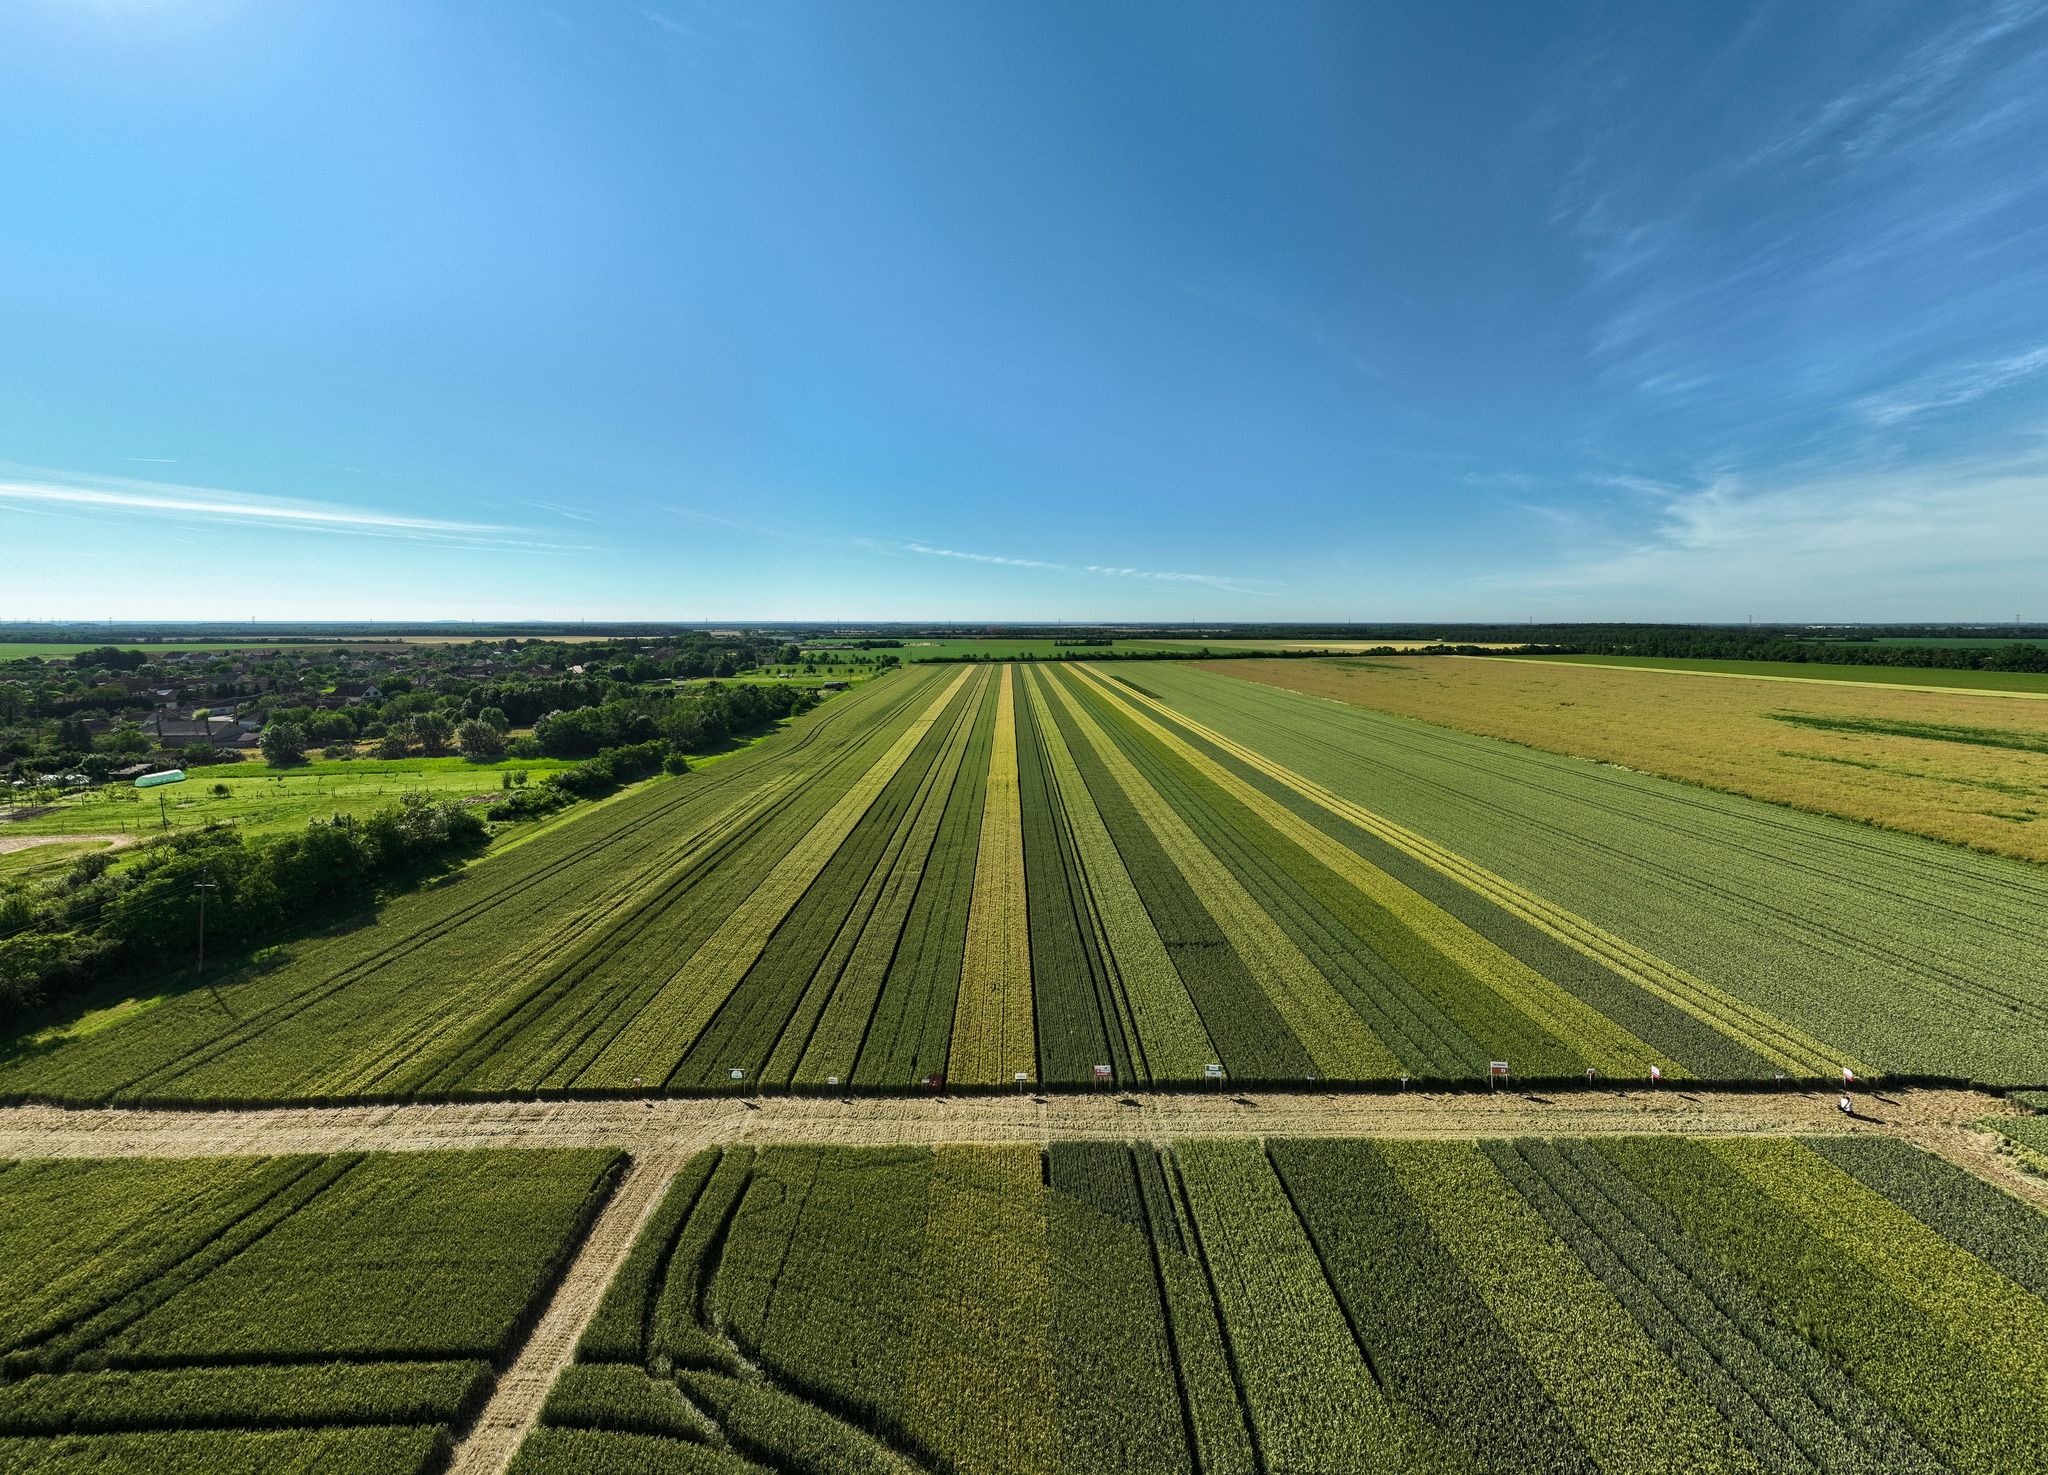 Magyarországon 4,3 millió hektáron folyik szántóföldi növénytermesztés, ahol a hozamelvárások mellett a gazdálkodóknak a magasabb beltartalmi értékek és minőség szempontjait érdemes beemelniük a kalászosok esetében a fajtaválasztásnál - Fotó: FB